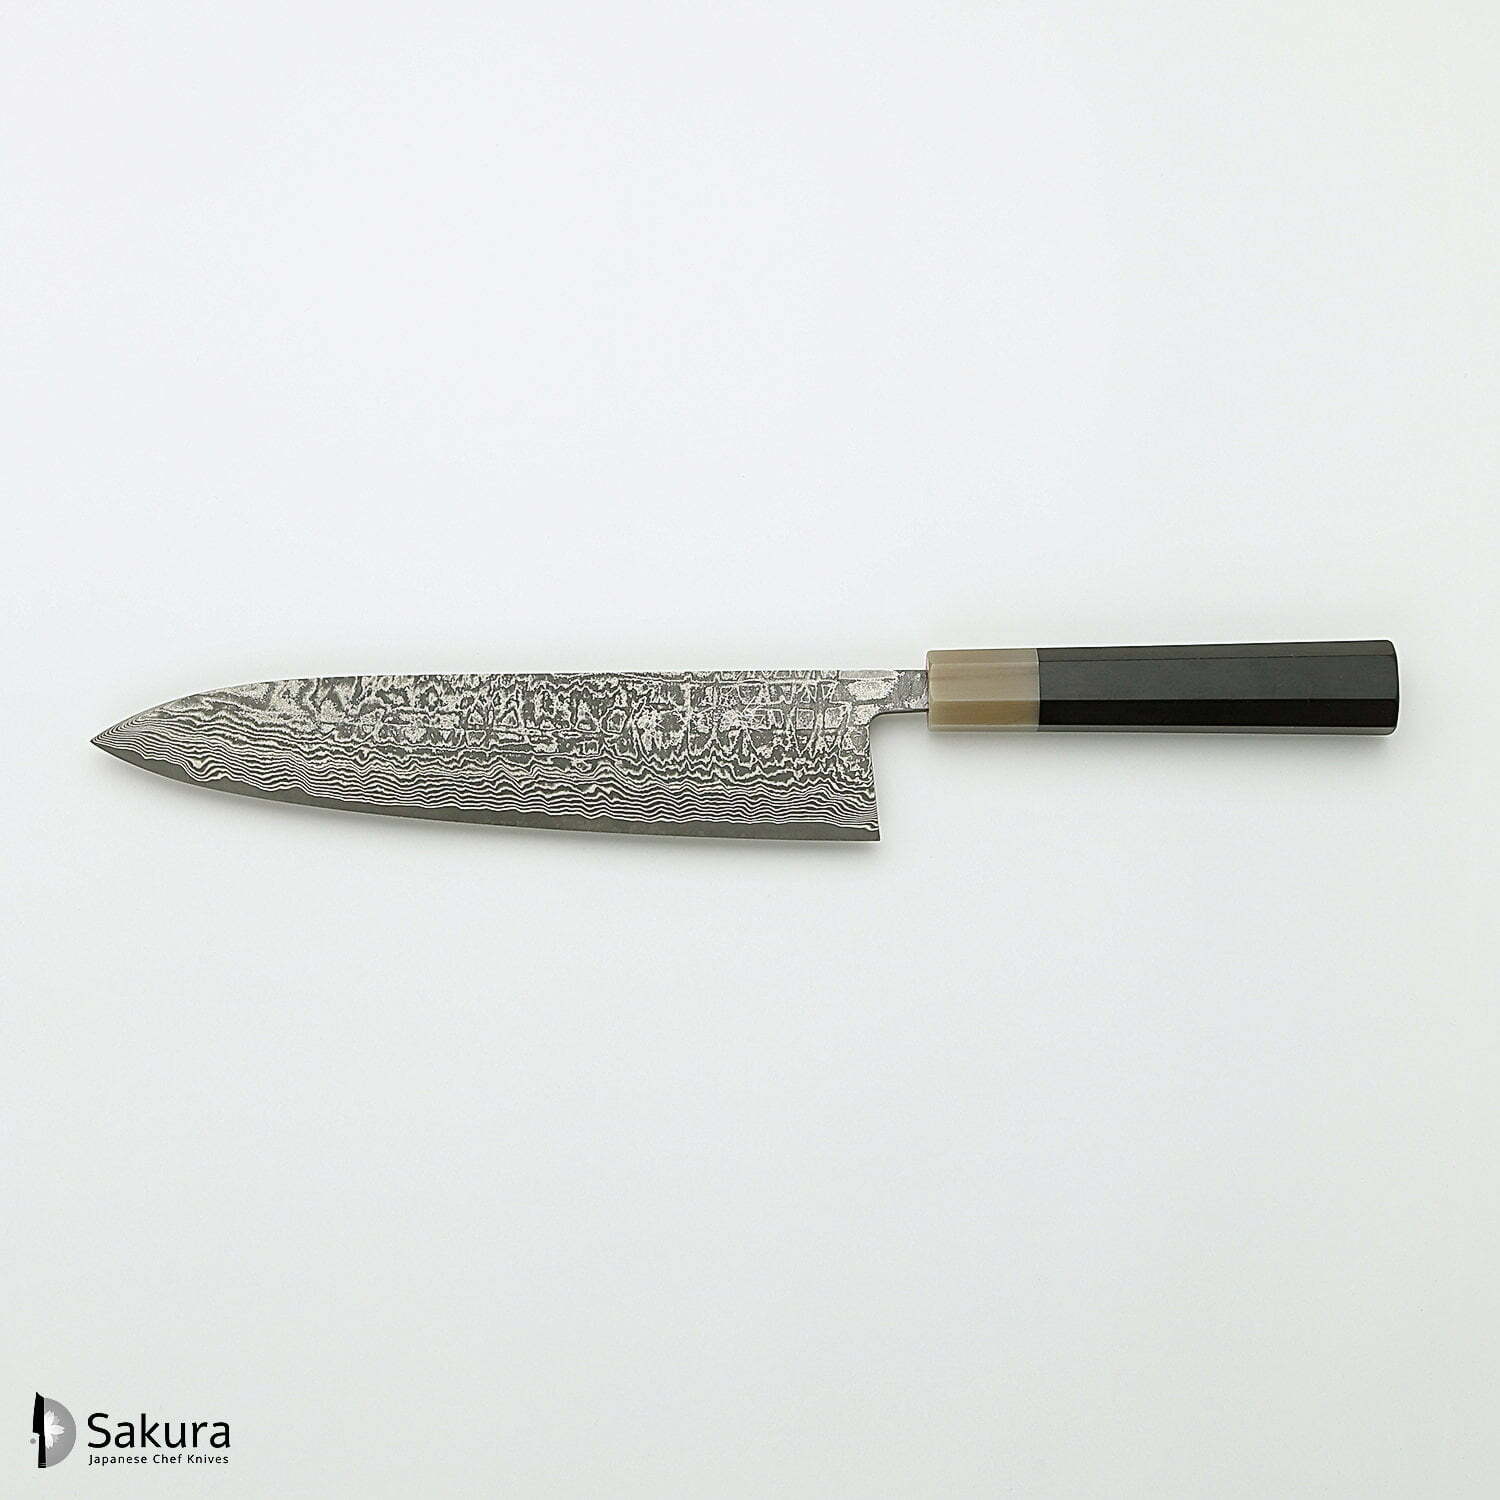 סכין שף רב-תכליתית גִּיוּטוֹ 210מ״מ מחושלת בעבודת יד 3 שכבות: פלדת פחמן יפנית מתקדמת מסוג R2/SG2 עטופה פלדת דמשק אל-חלד גימור דמשק שירו קאמו יפן